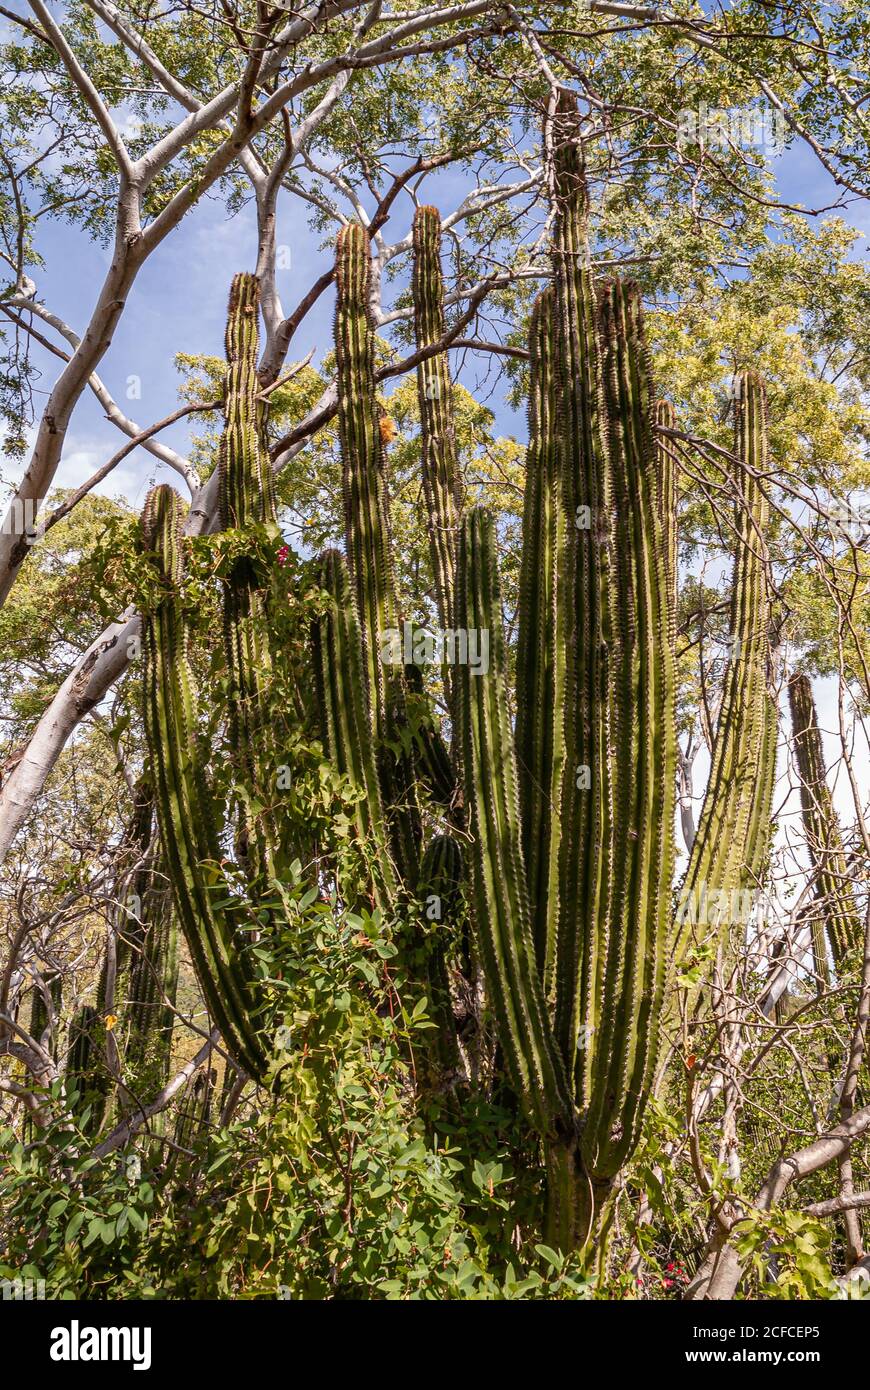 Baja California sur, Messico - 23 novembre 2008: Foreste secche della Sierra de la Laguna. Primo piano di verde gigante elefante cactus corona contro cielo blu sur Foto Stock